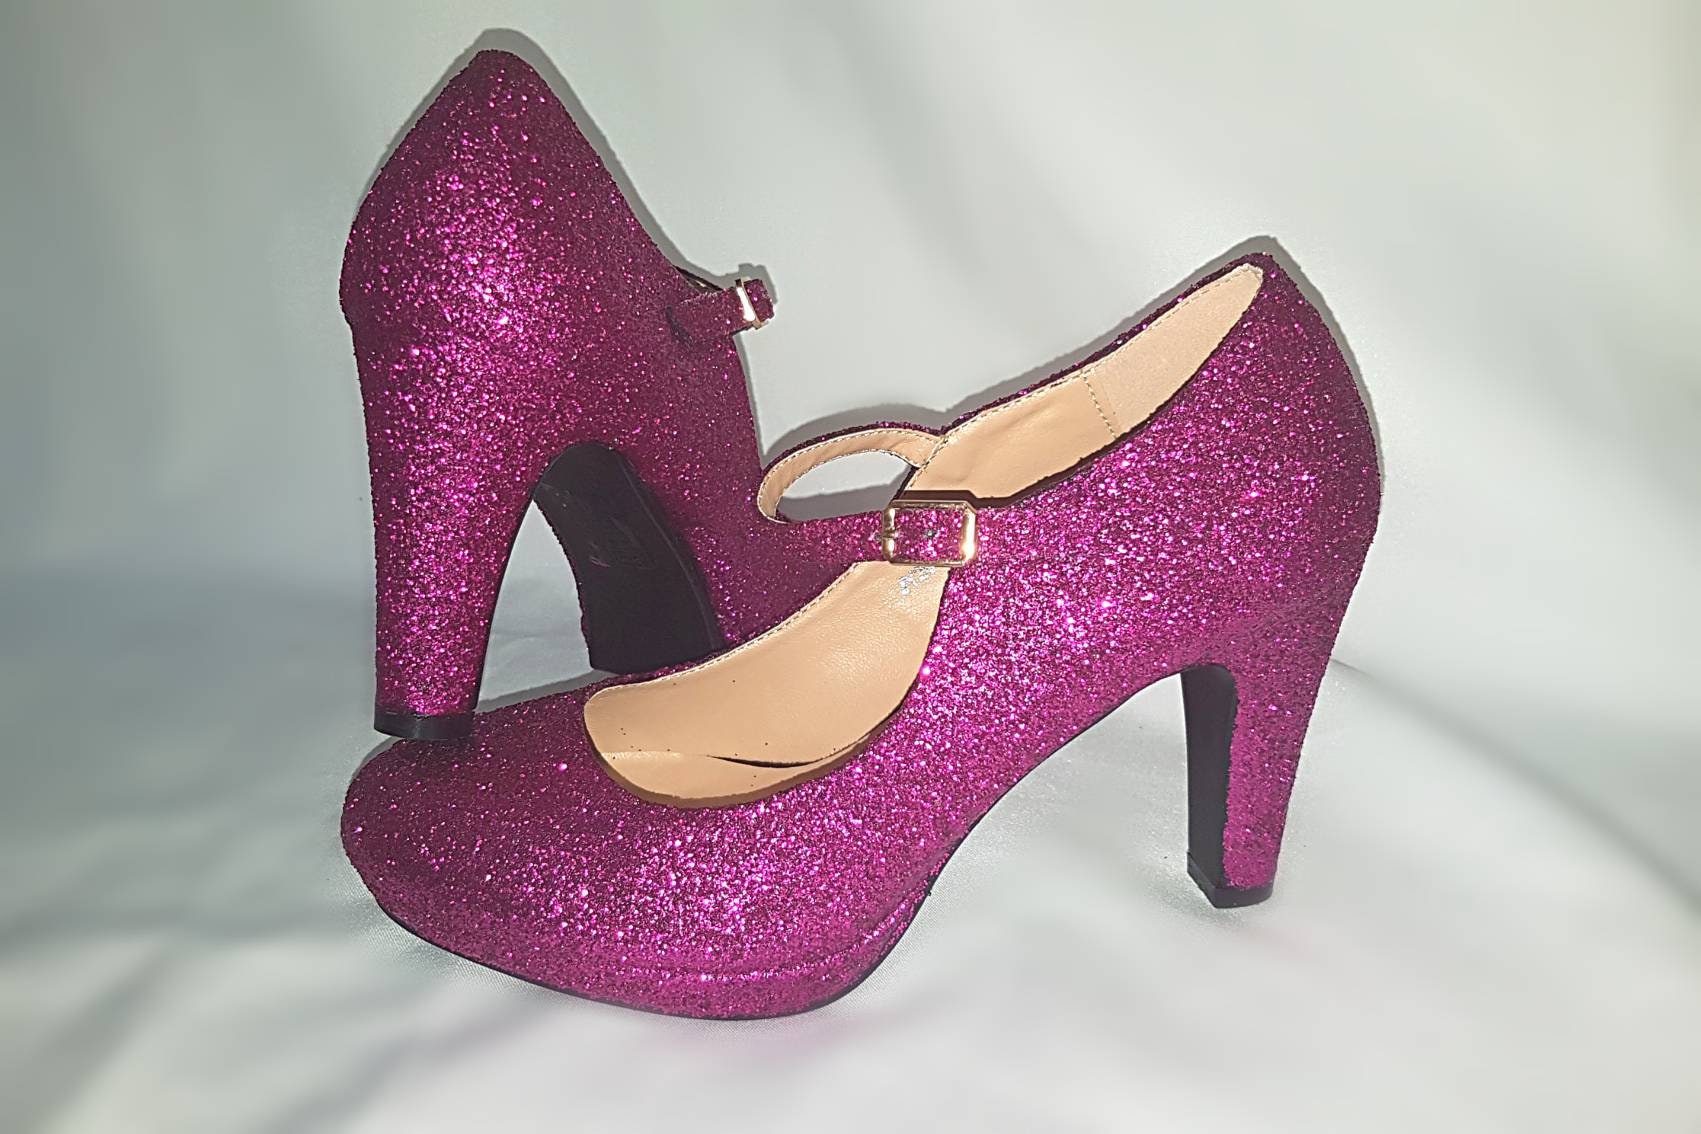 Mary Jane glitter shoes block heel pinkMary Jane wedding | Etsy